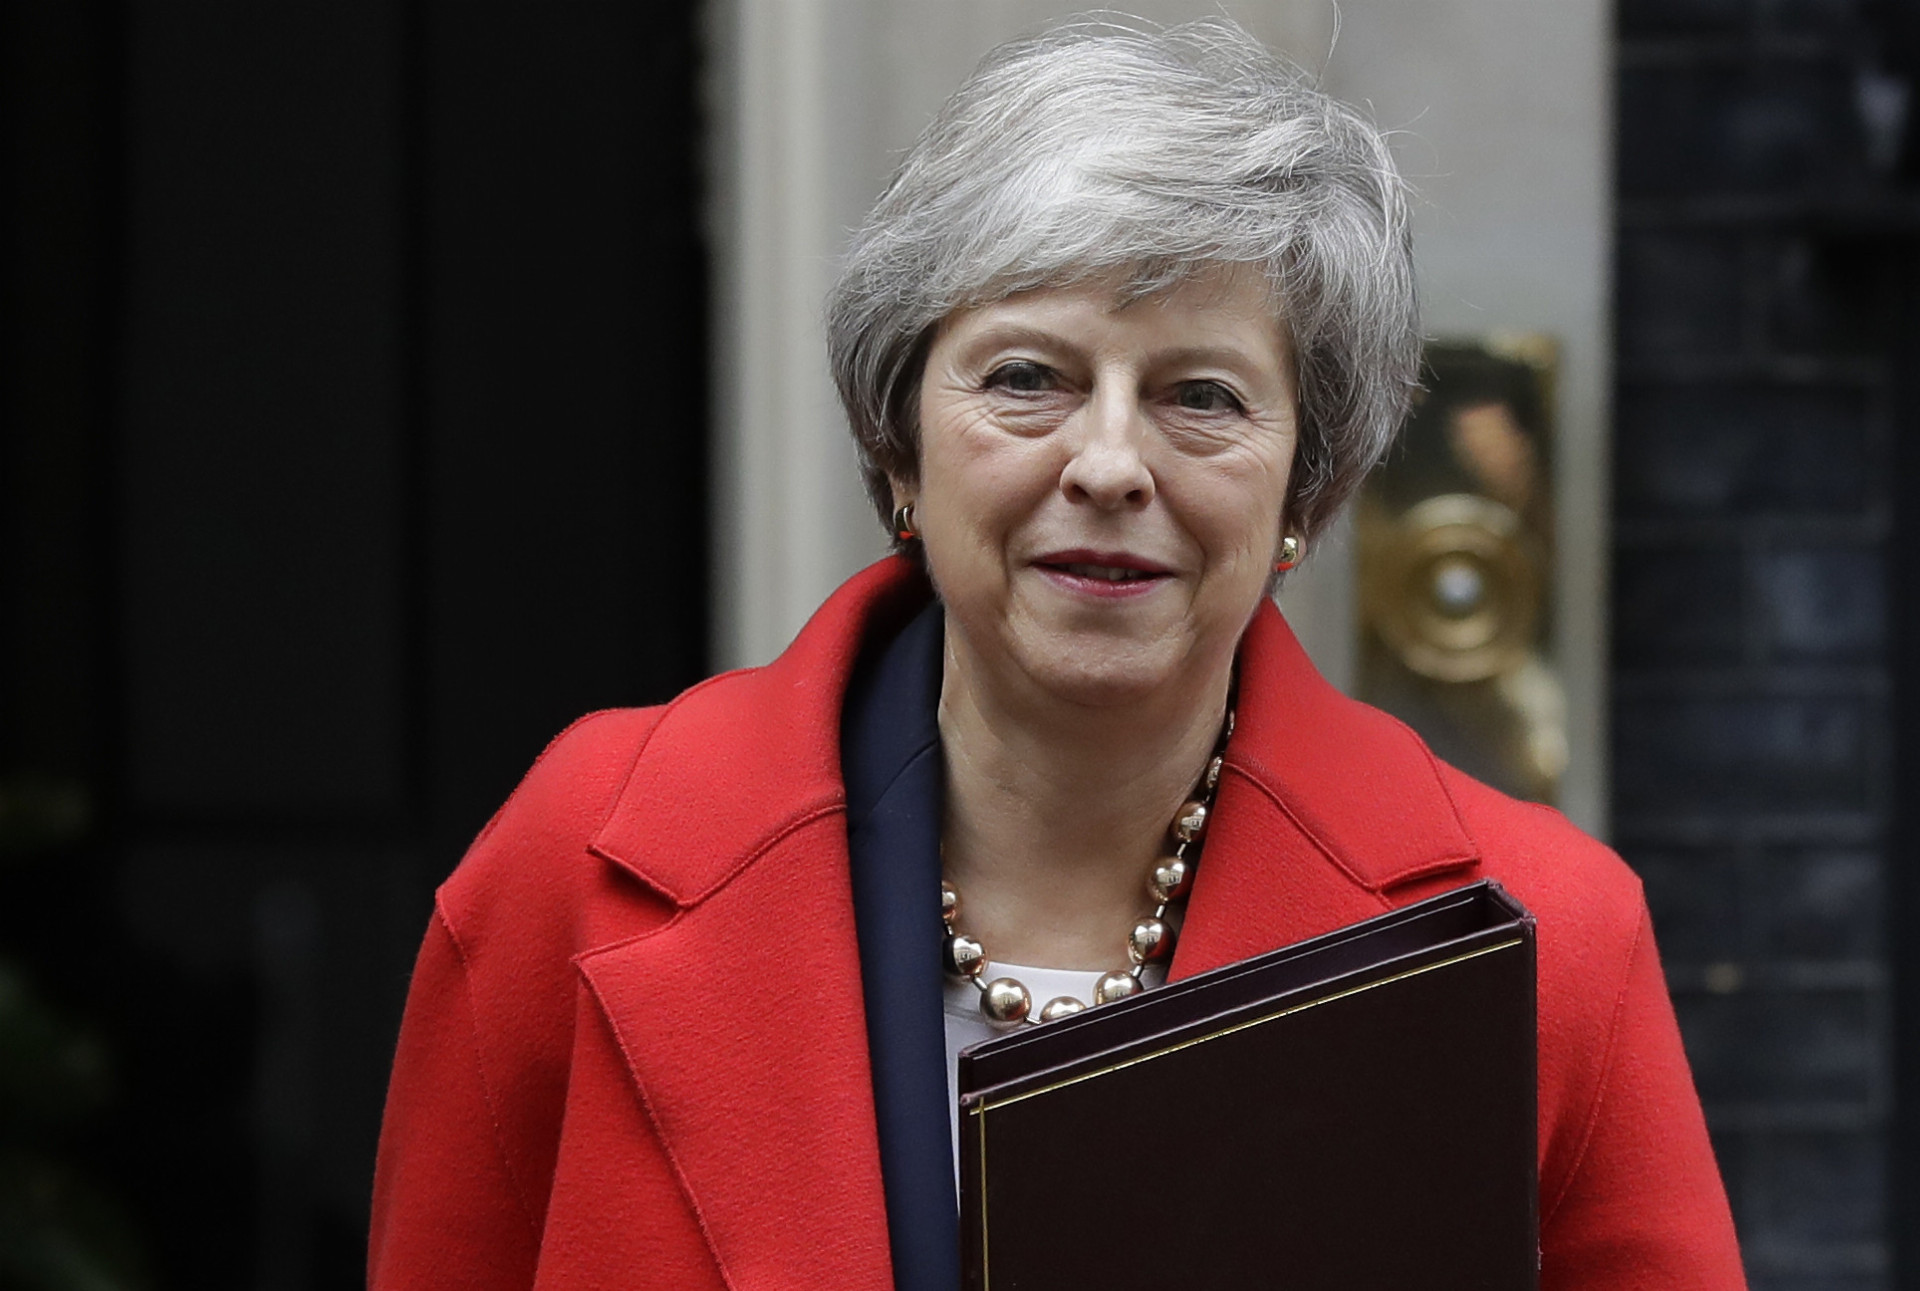 Mayová sa stala premiérkou vo Veľkej Británii v roku 2016. Posledné dva roky strávila vyjednávaním brexitu. Európski lídri v novembri schválili jej plán, ktorý otvára dvere na vystúpenie Veľkej Británie z Európskej únie.